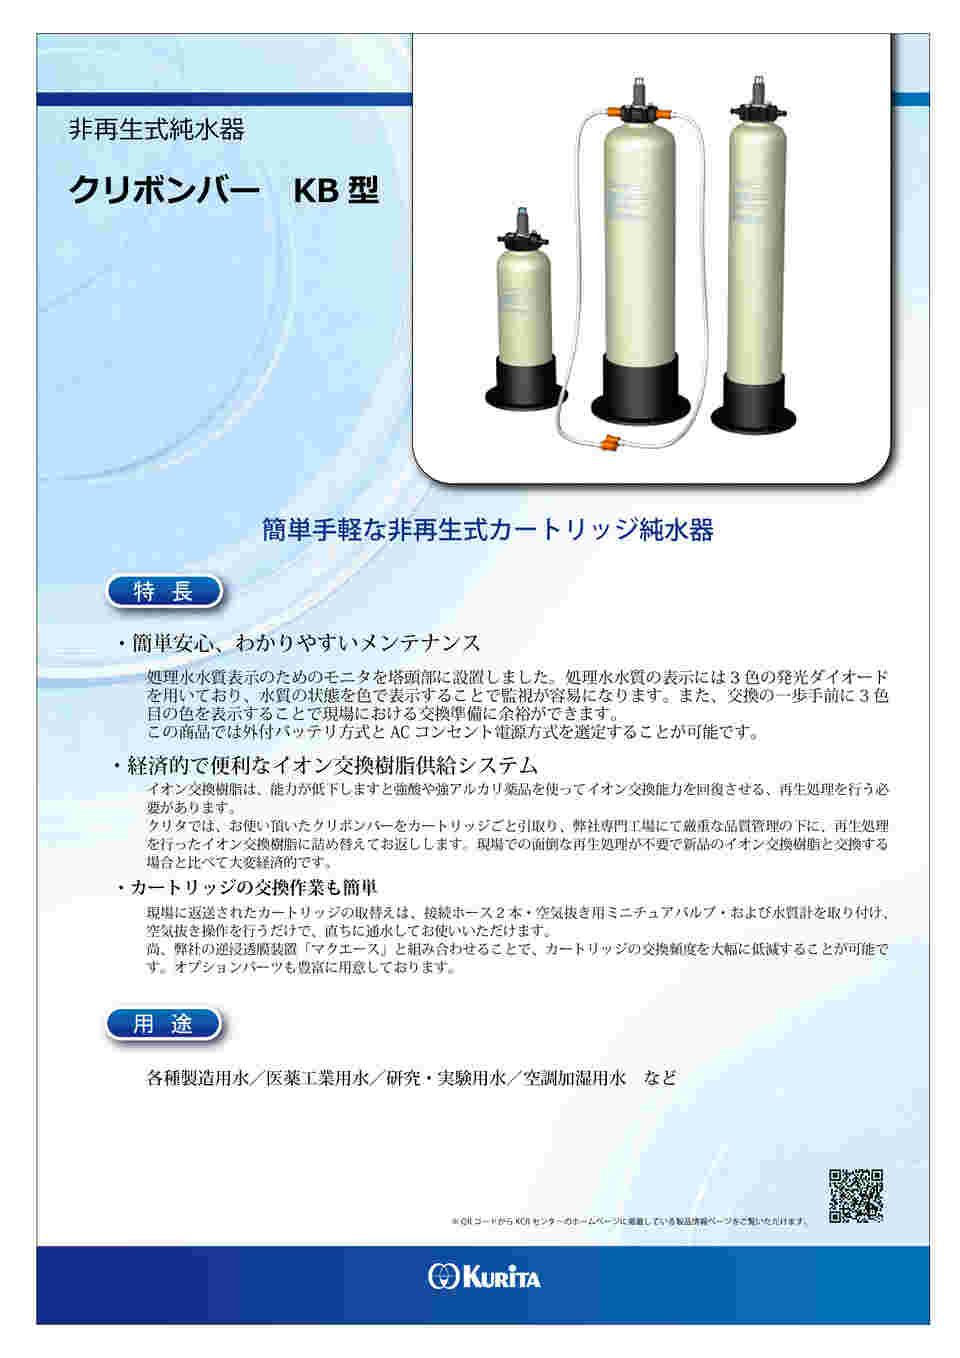 1-3134-05 カートリッジ純水器 クリボンバー KB-15型 【AXEL】 アズワン